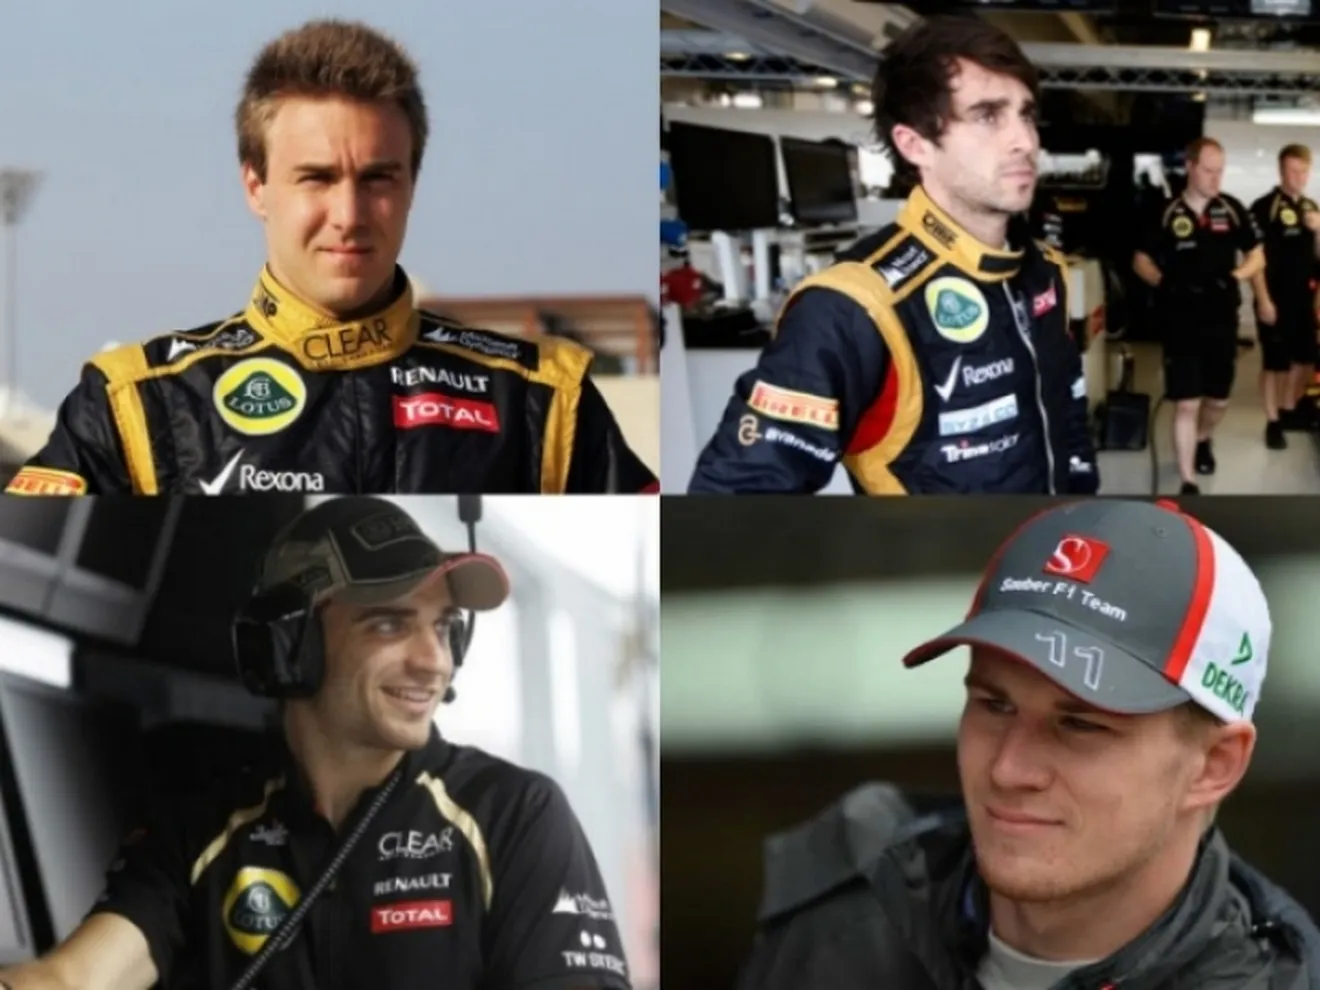 ¿Quién sustituirá a Kimi Raikkonen en Lotus?